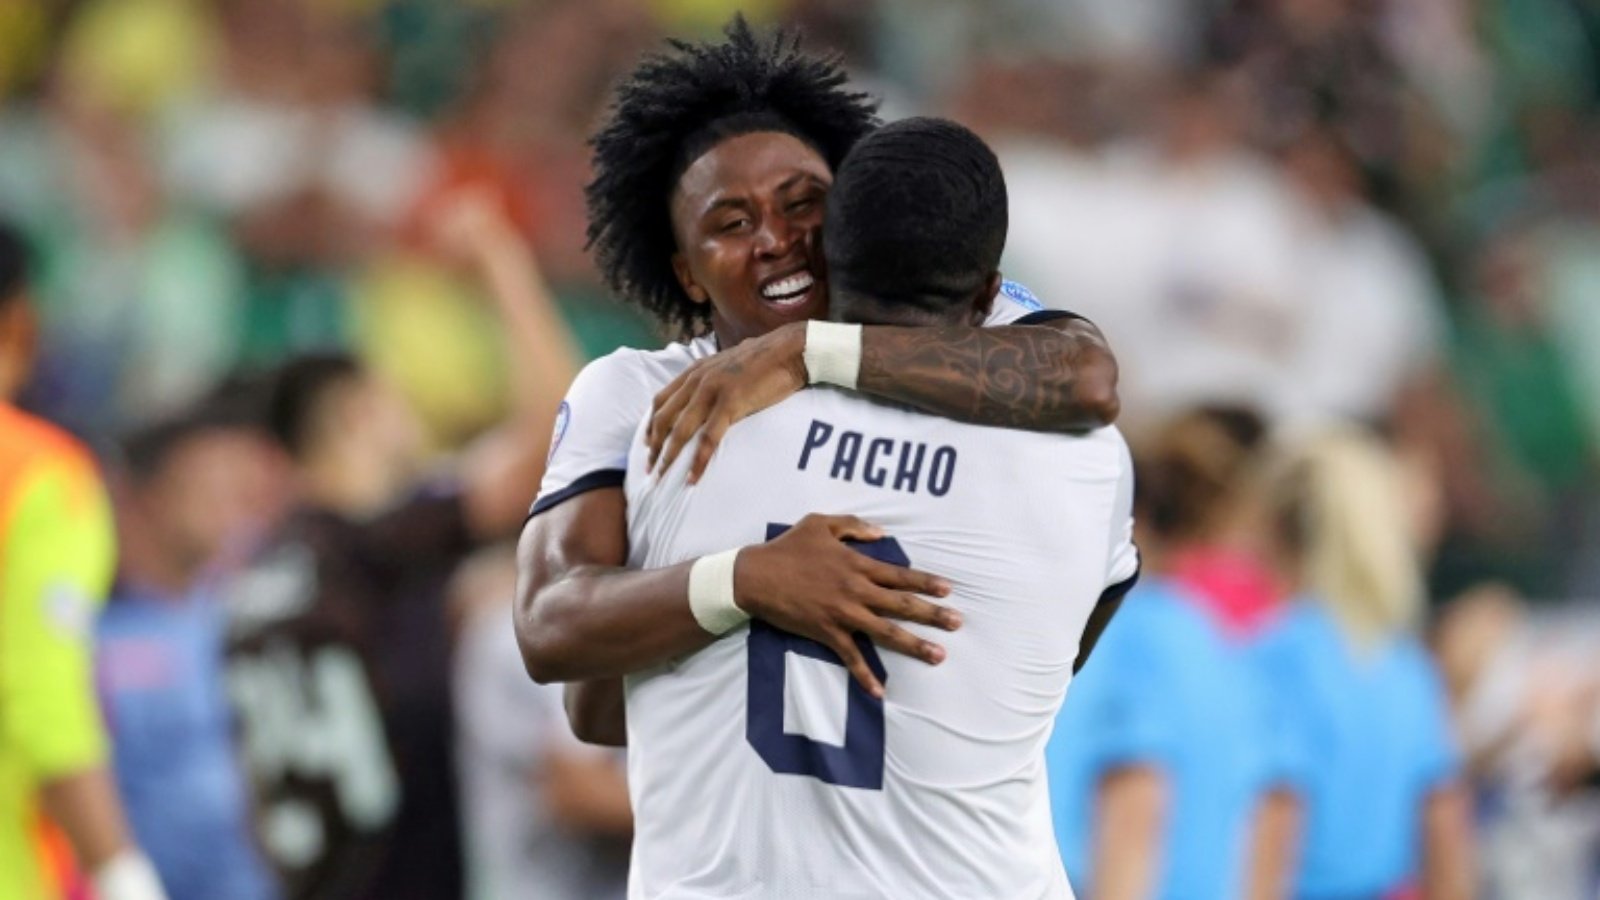 لاعبا الإكوادور أنخيلو بريسيادو (يسار) وويليان باتشو يحتفلان بعد التأهل إلى الدور ربع النهائي لبطولة كوبا أميركا في كرة القدم. غليندايل، اريزونا في 30 حزيران (يونيو) 2024